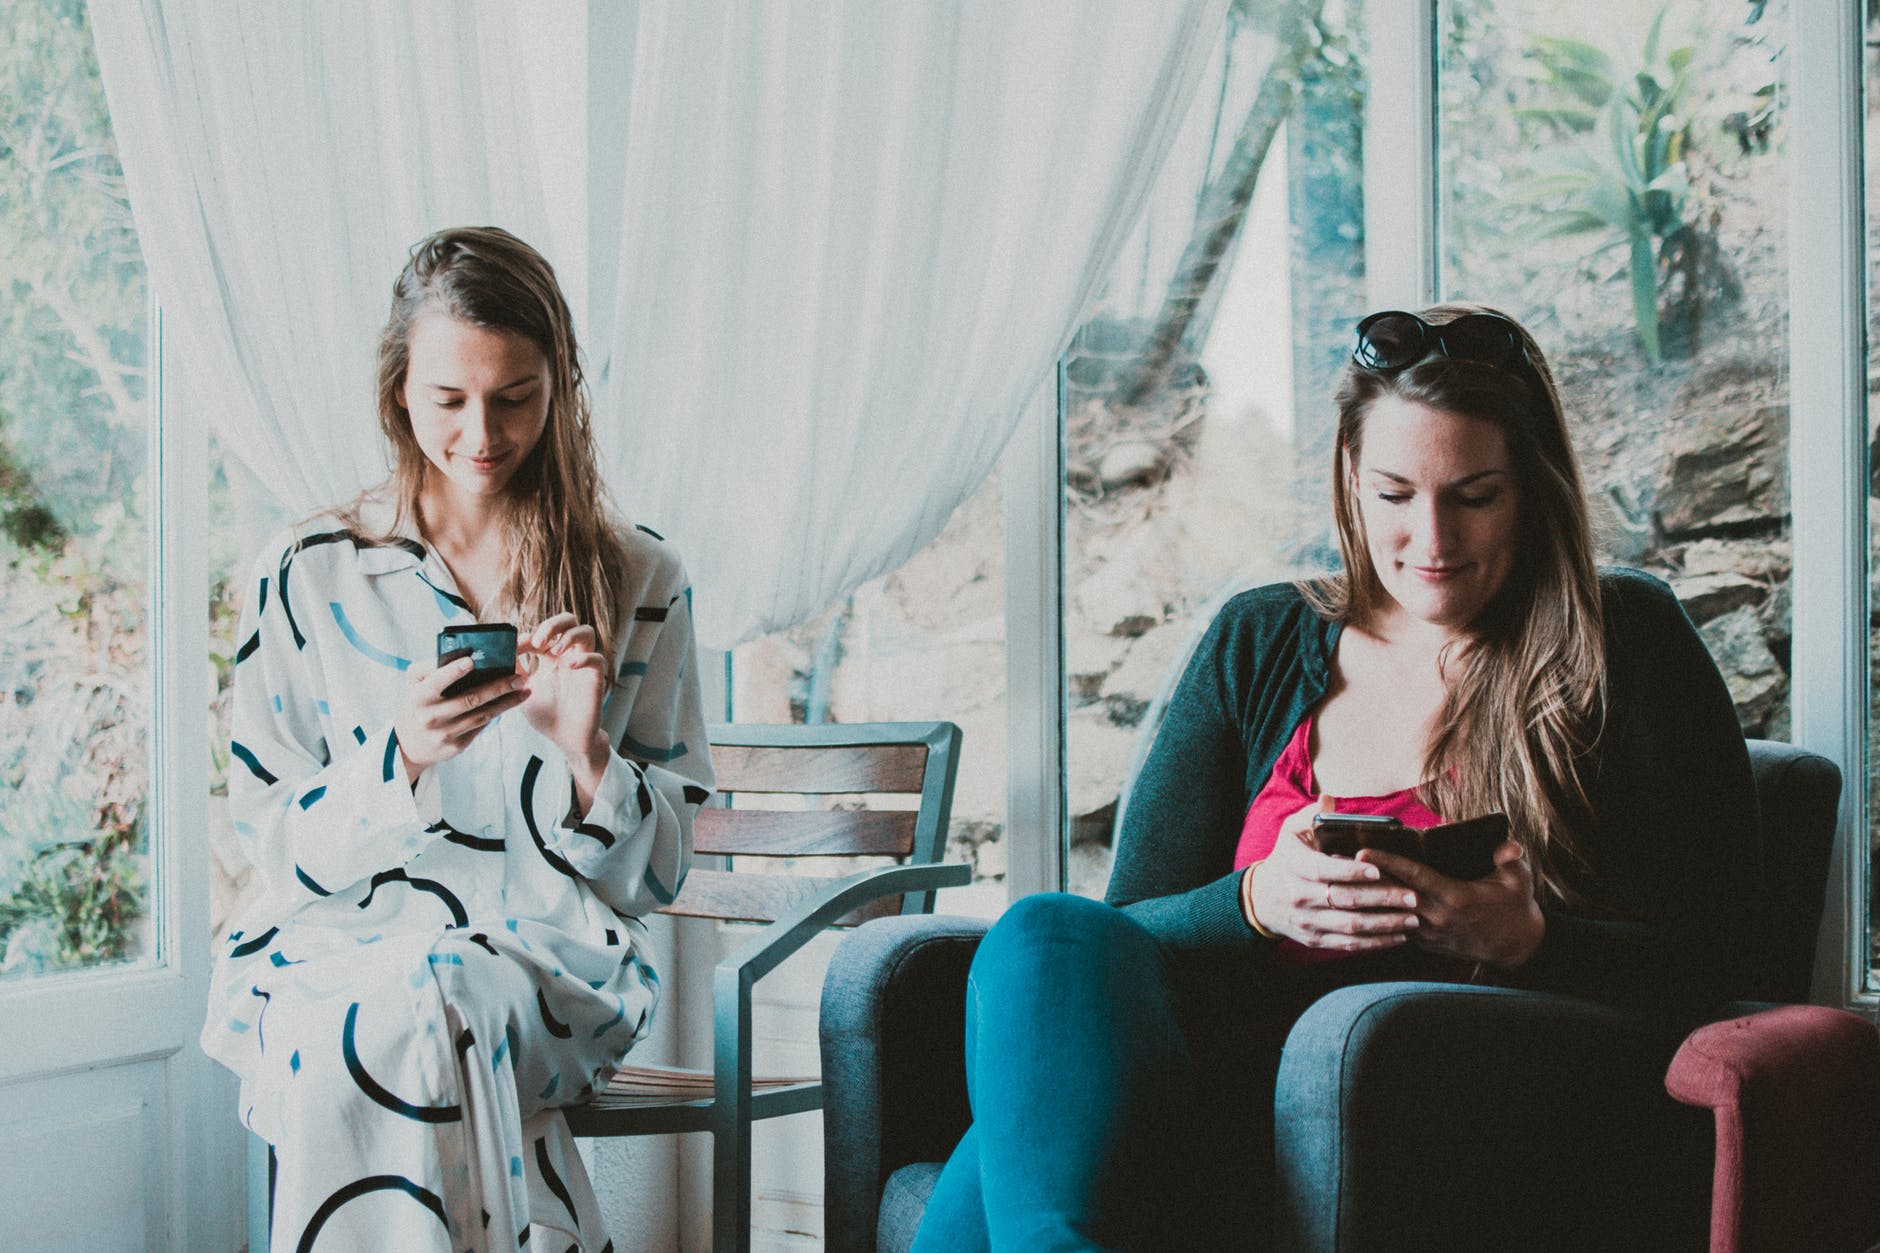 two women using smartphones inside room